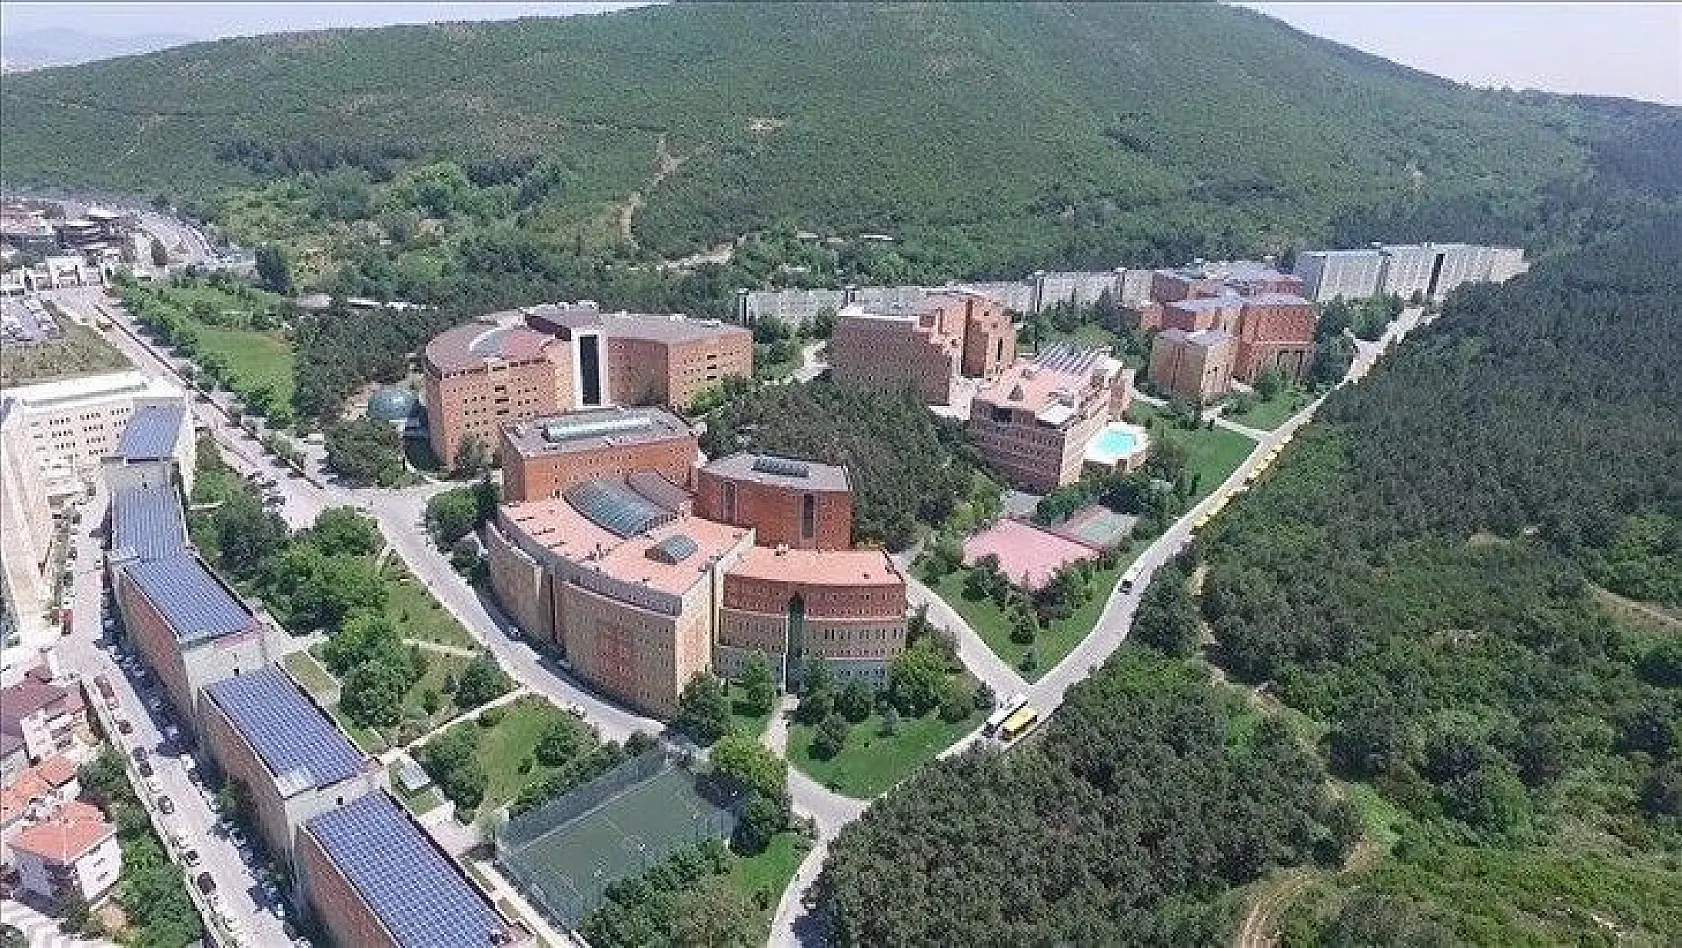 Yeditepe Üniversitesi personel alacak